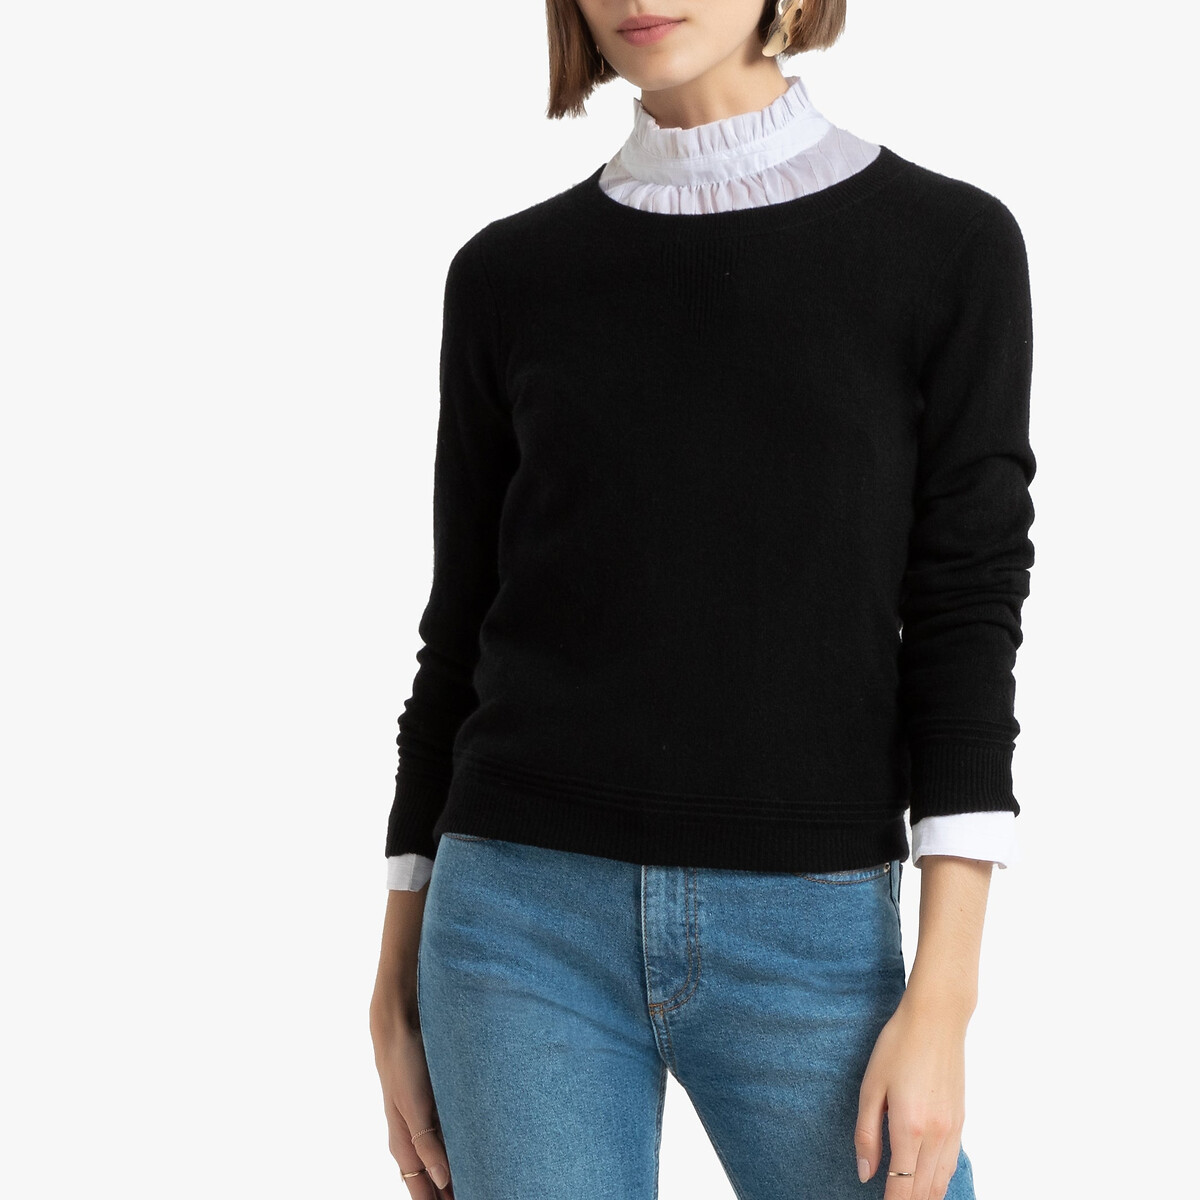 Пуловер La Redoute С круглым вырезом из кашемира XXL черный, размер XXL - фото 1